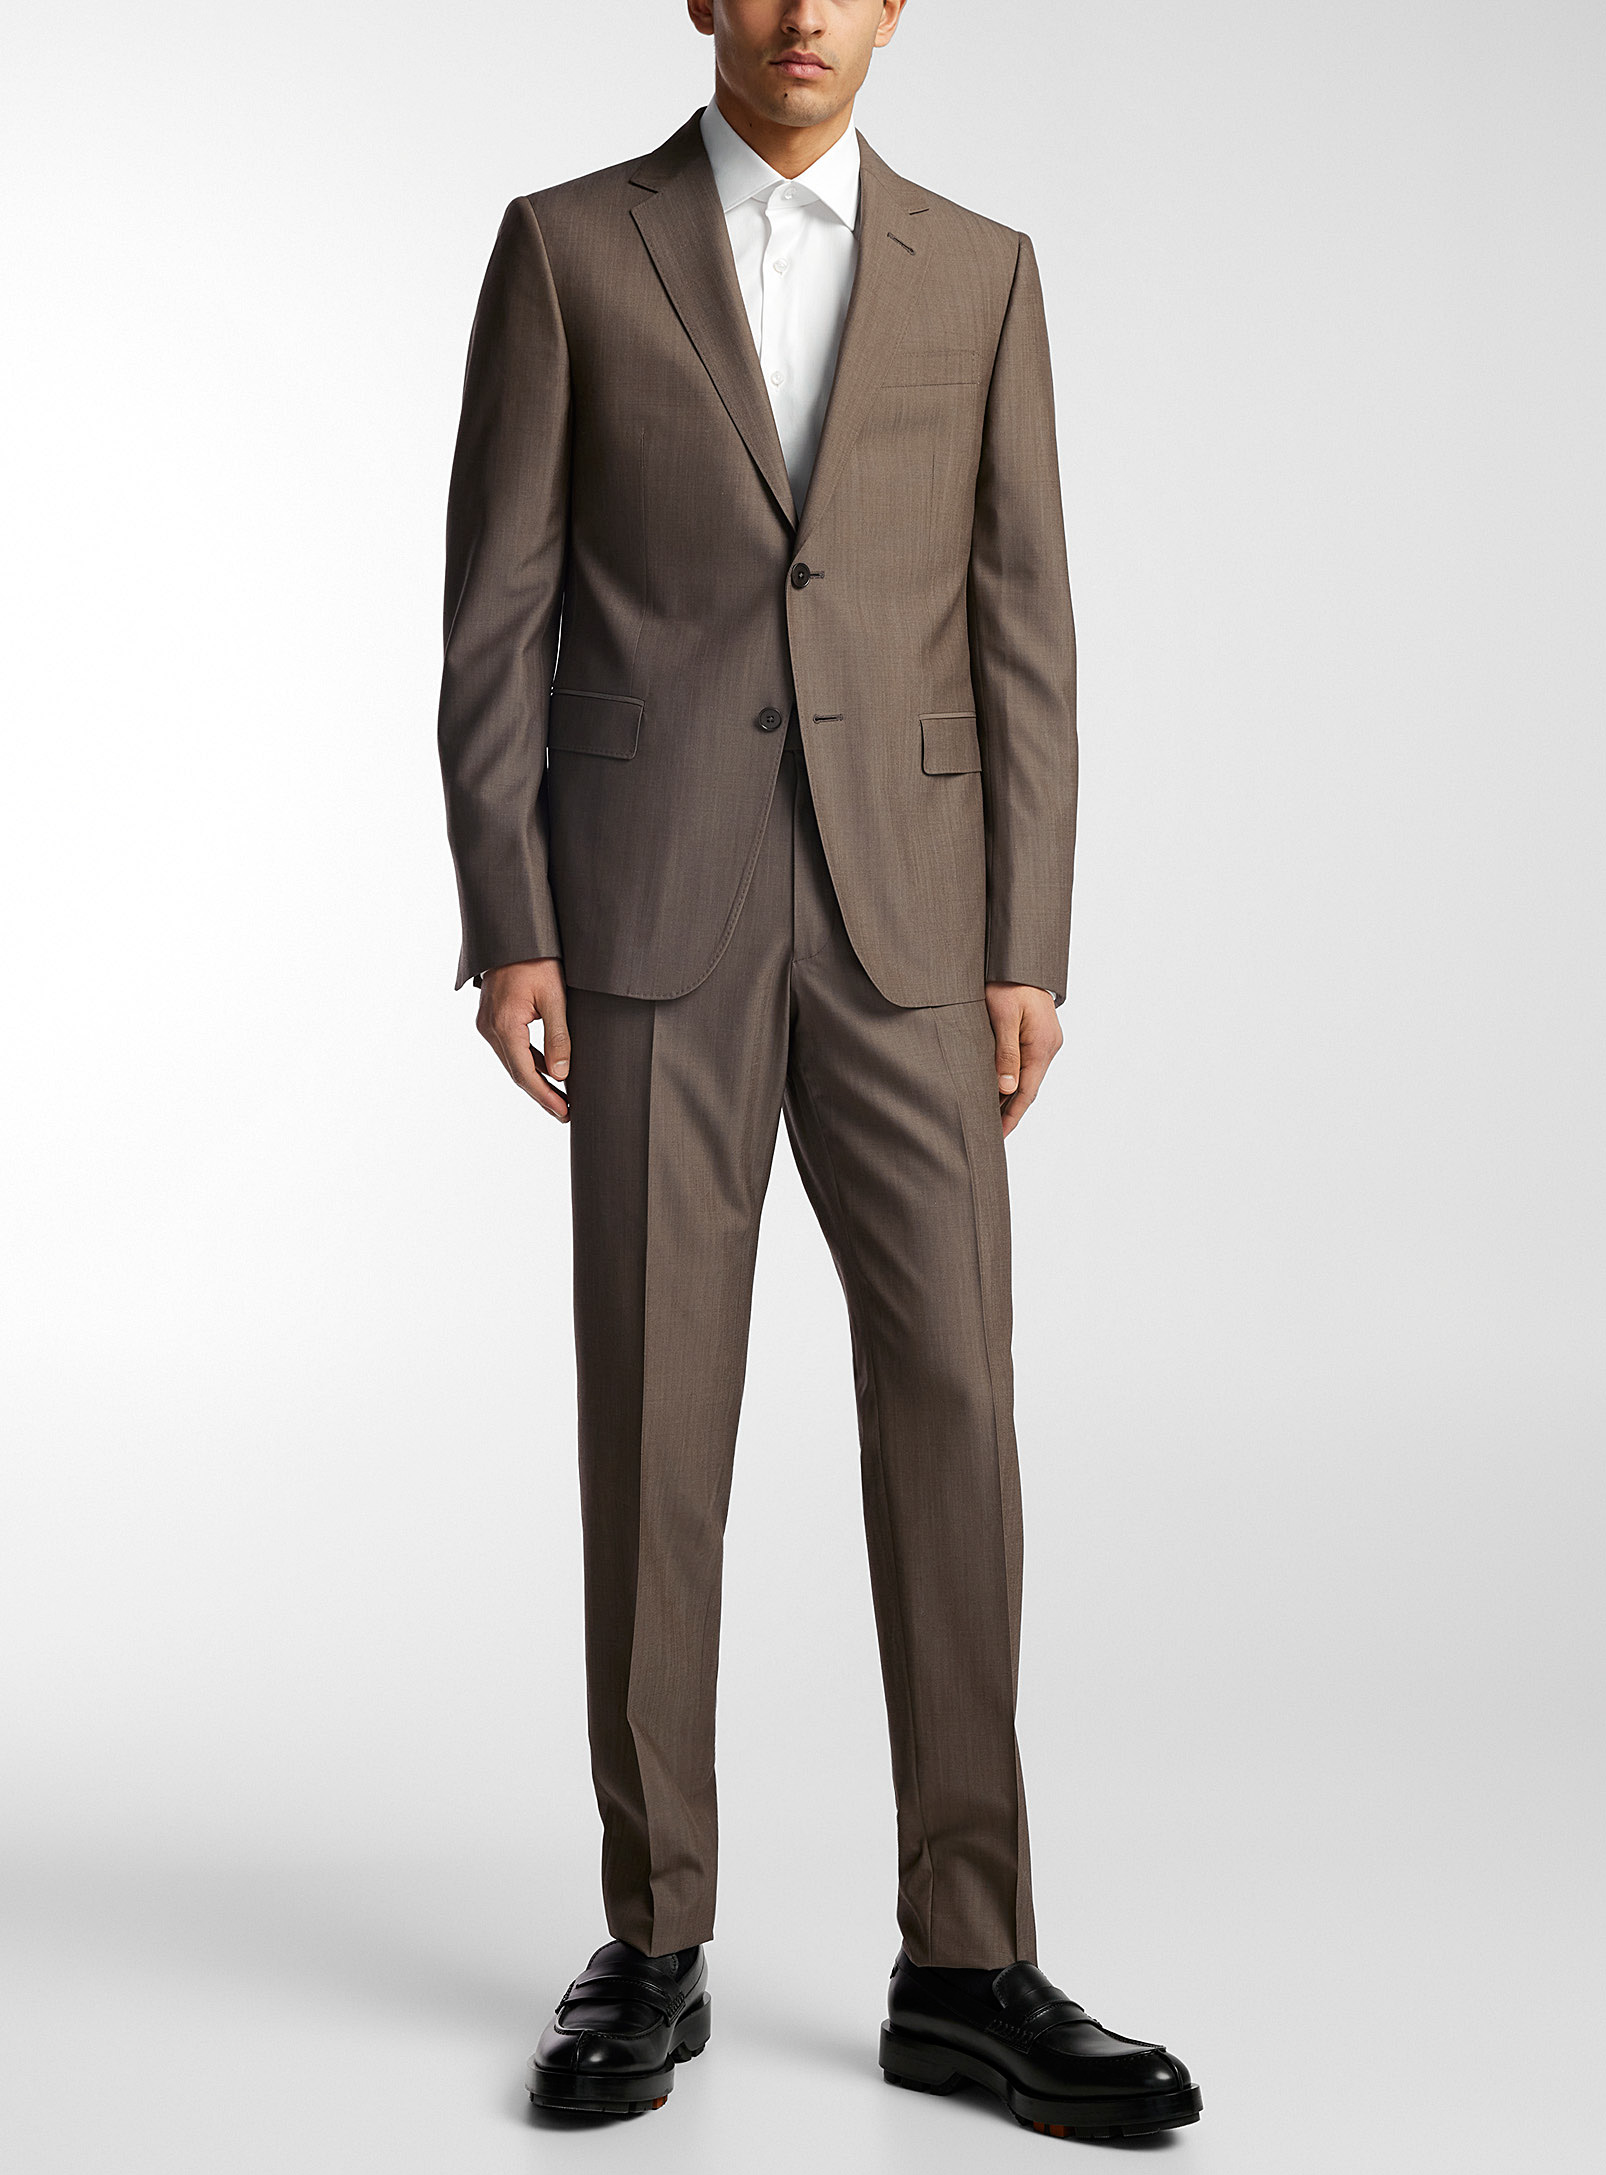 Zegna - Men's Minimalist plain suit